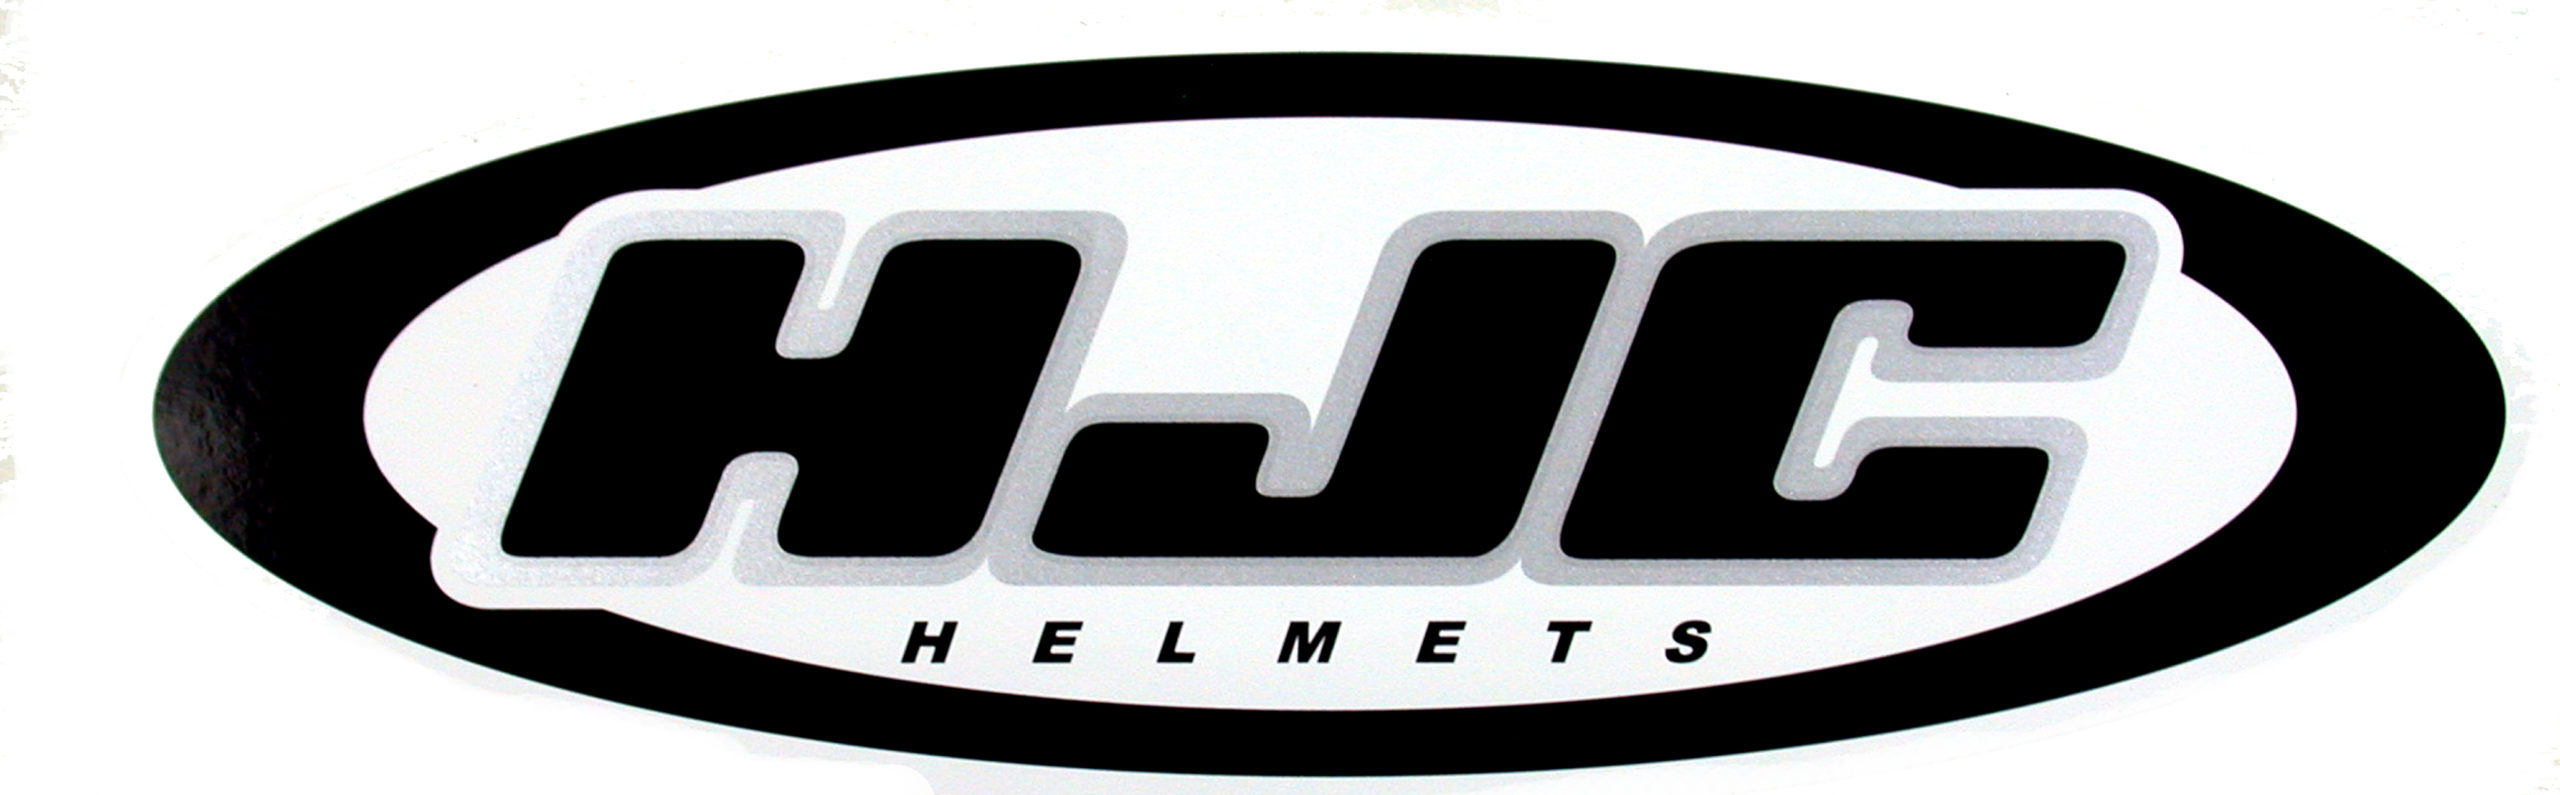 HJC helmets